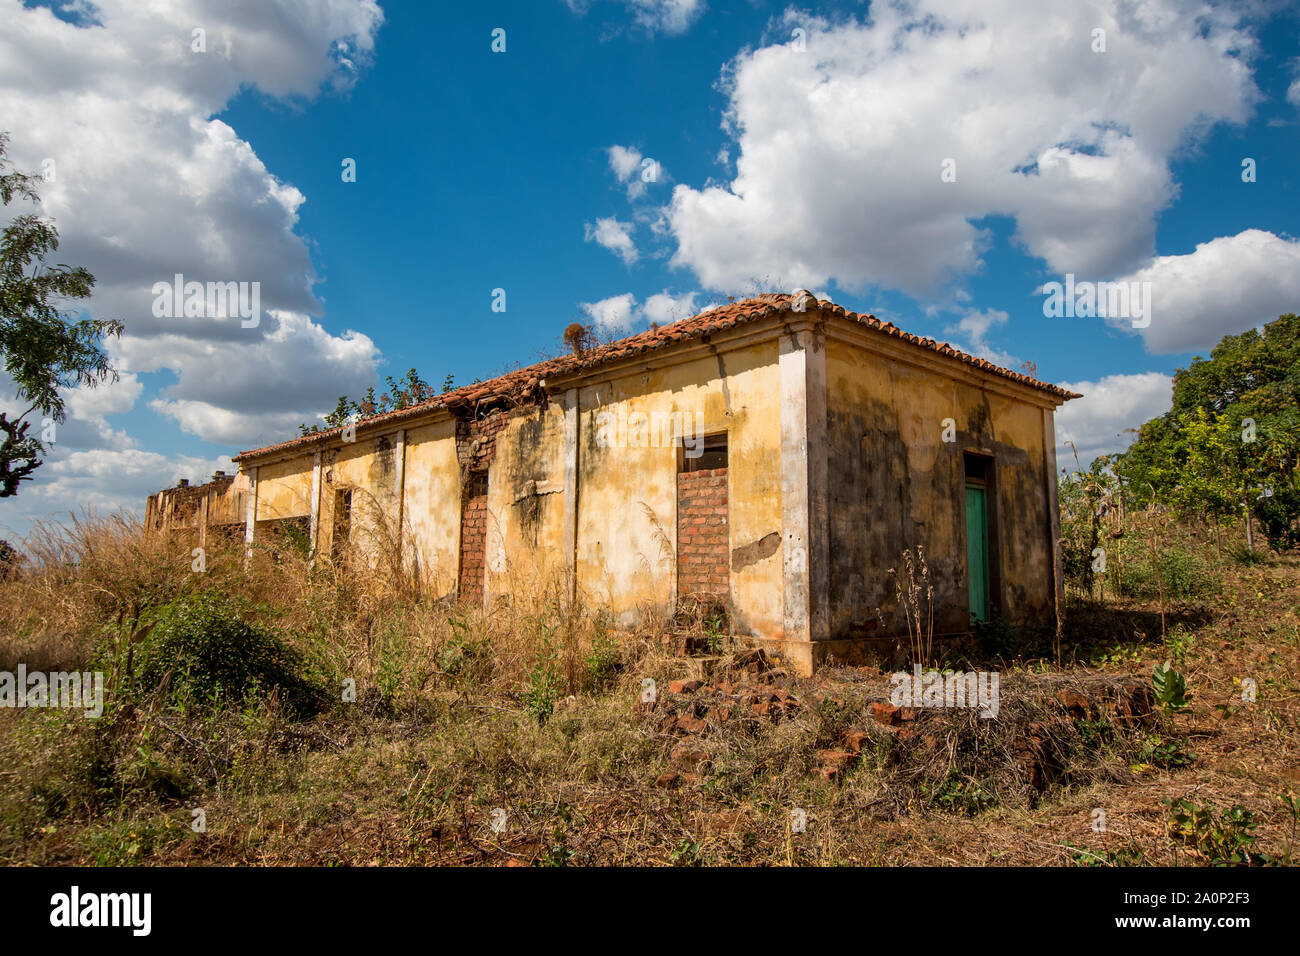 Une bâtisse, lors d'une journée ensoleillée en milieu rural au Mozambique, l'Afrique Banque D'Images